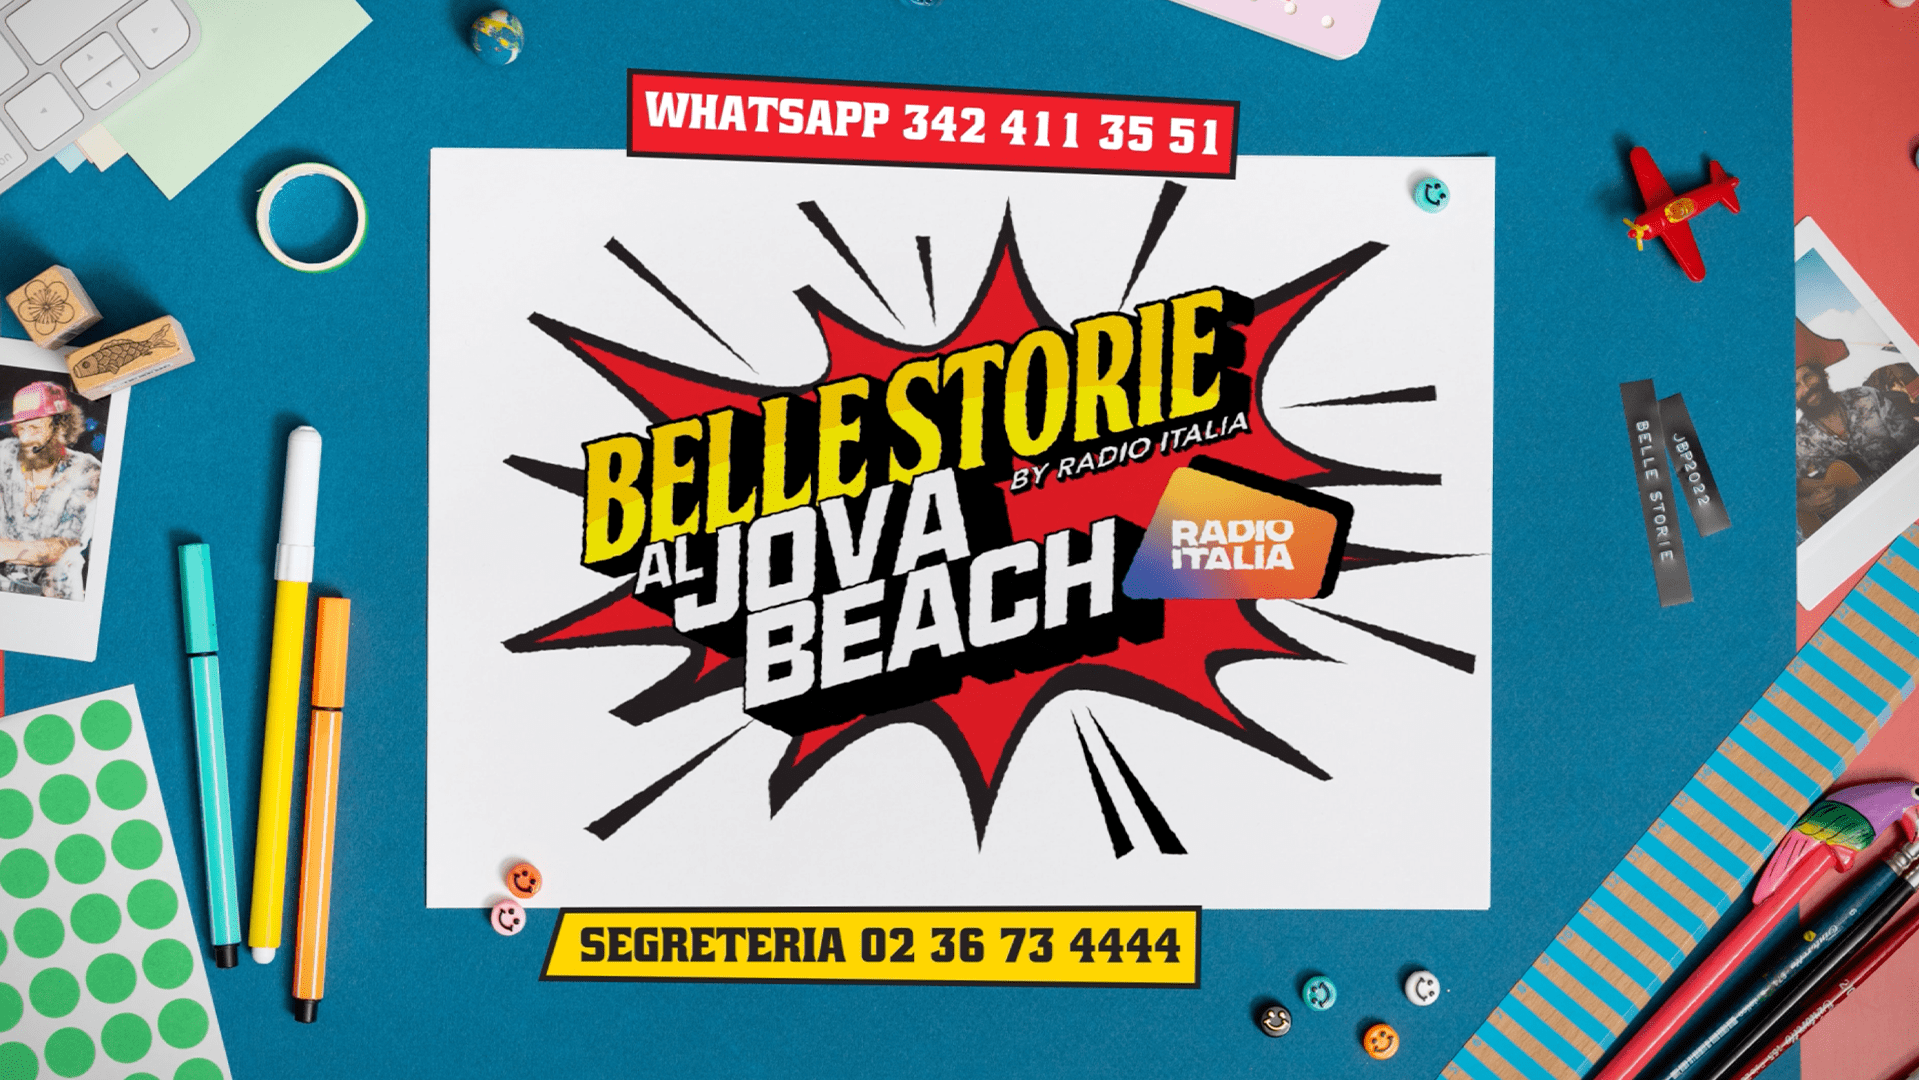 BELLE STORIE AL JOVA BEACH: JOVANOTTI E RADIO ITALIA TI PORTANO SUL PALCO DEL JOVA…